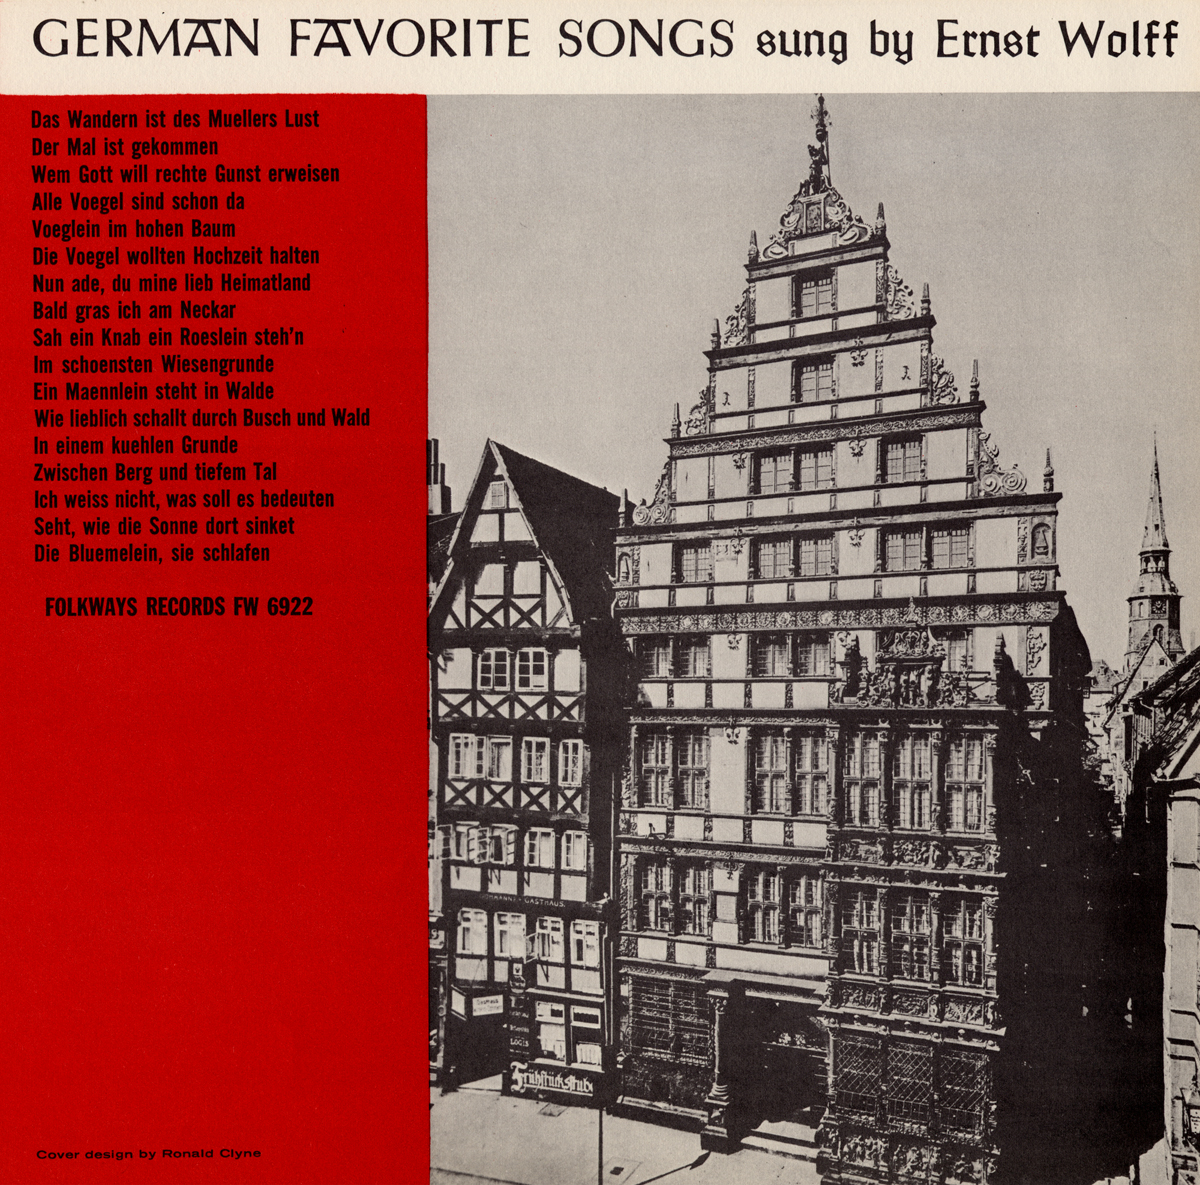 GERMAN FAVORITE SONGS